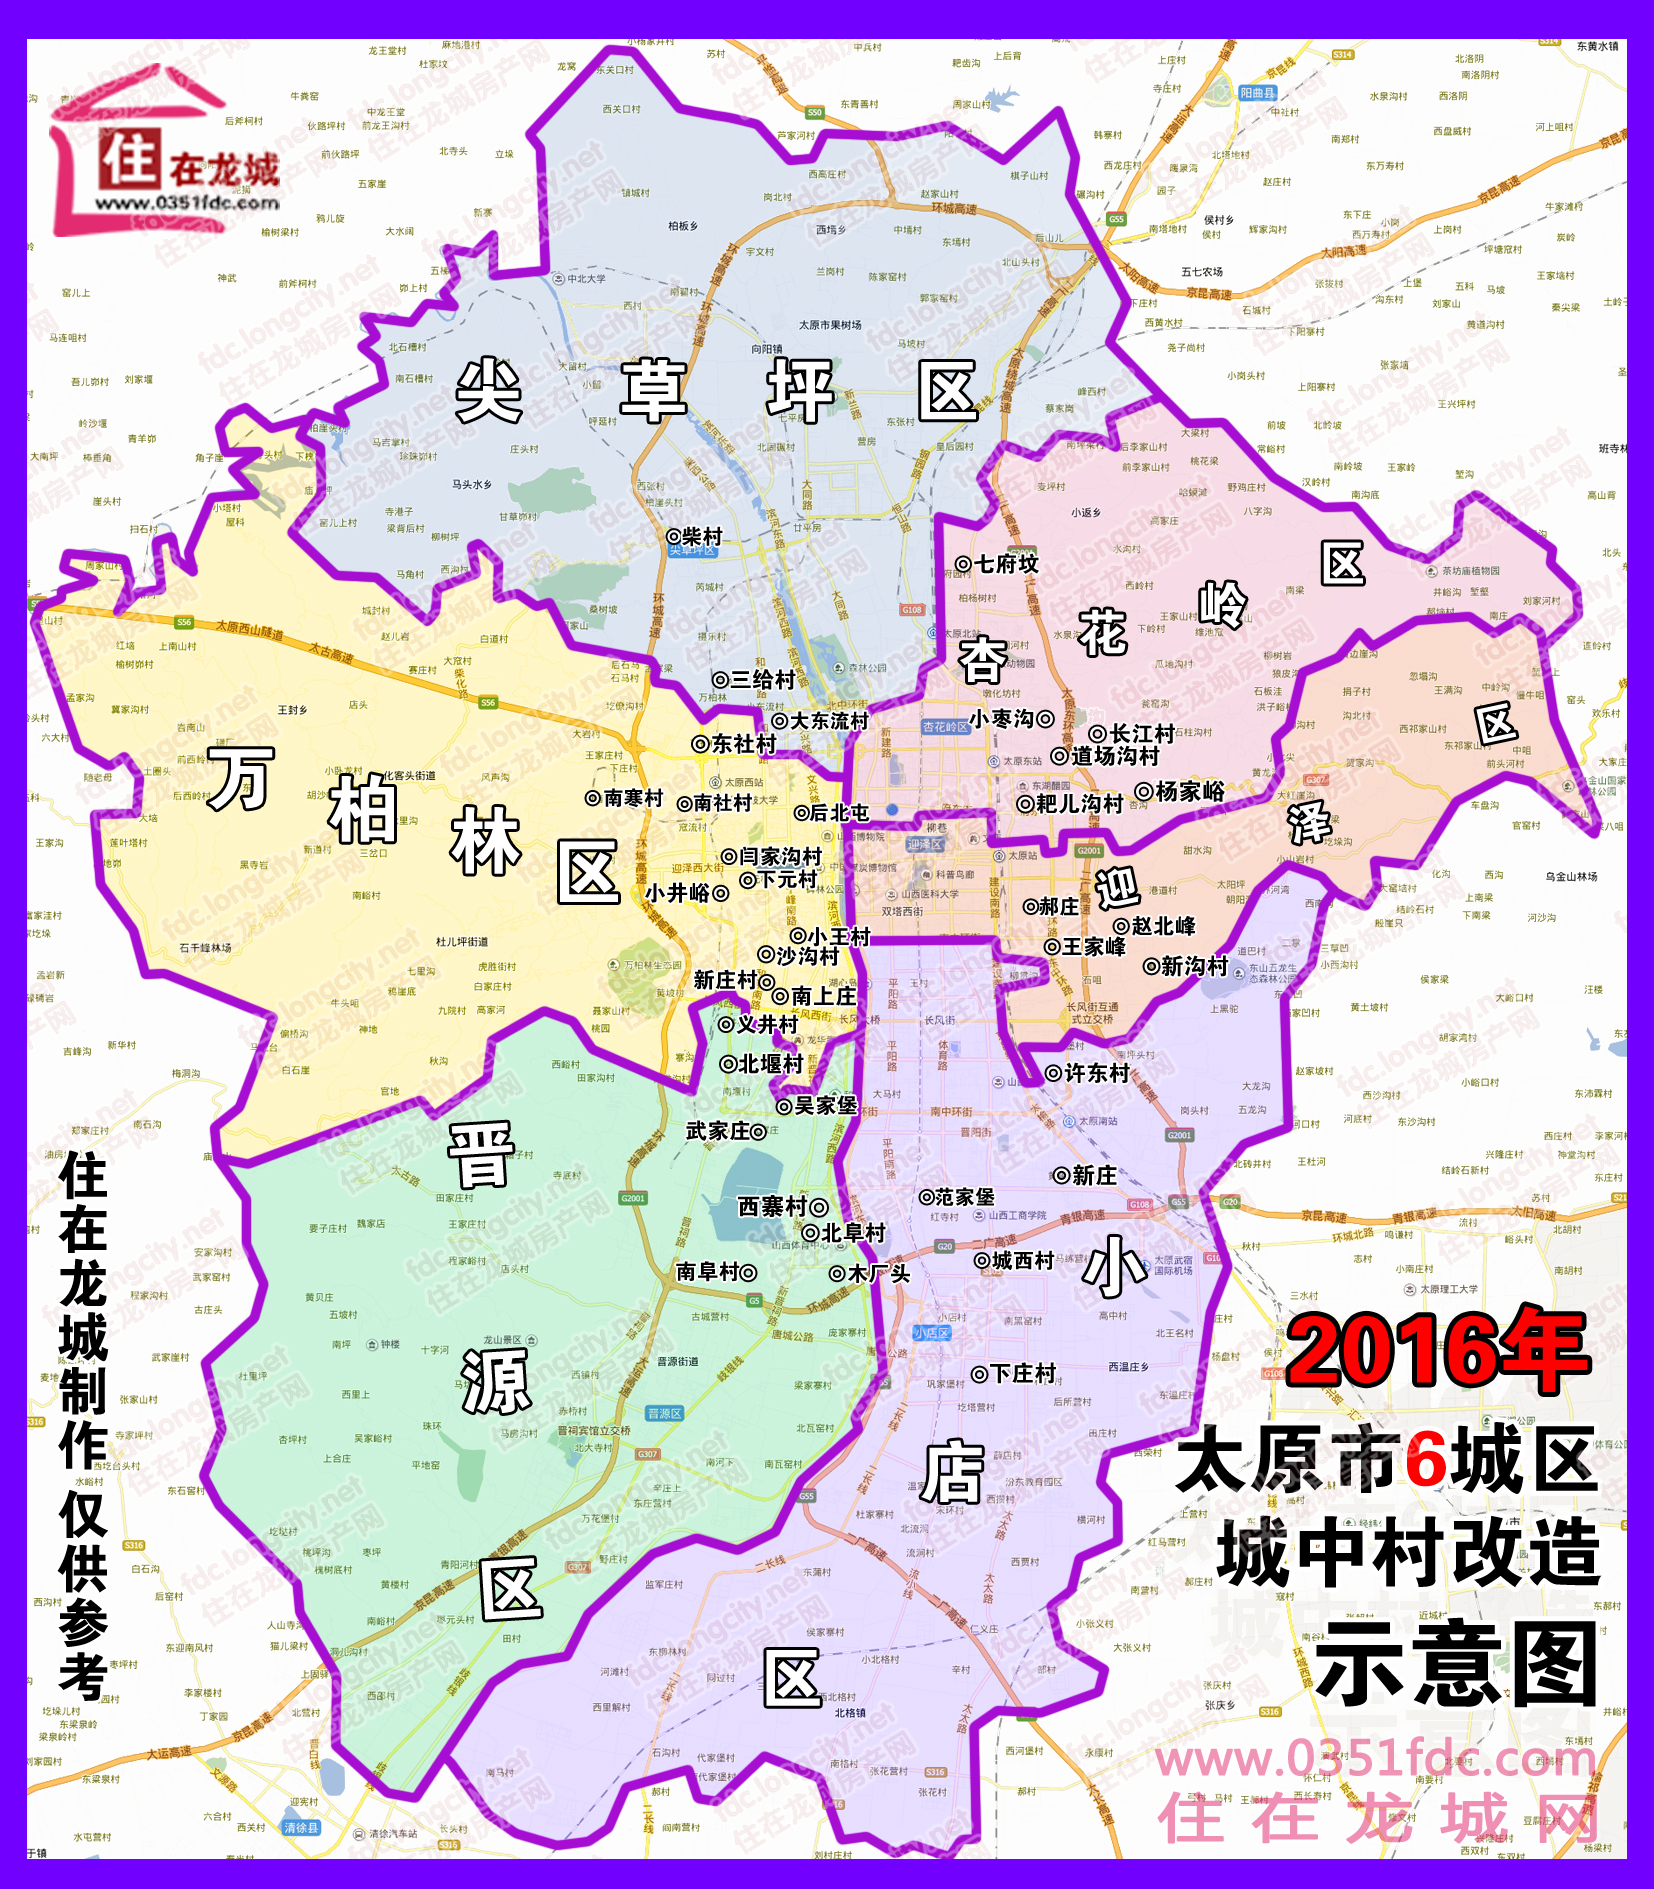 2013-2016年6城区37个城中村改造详情公示(图